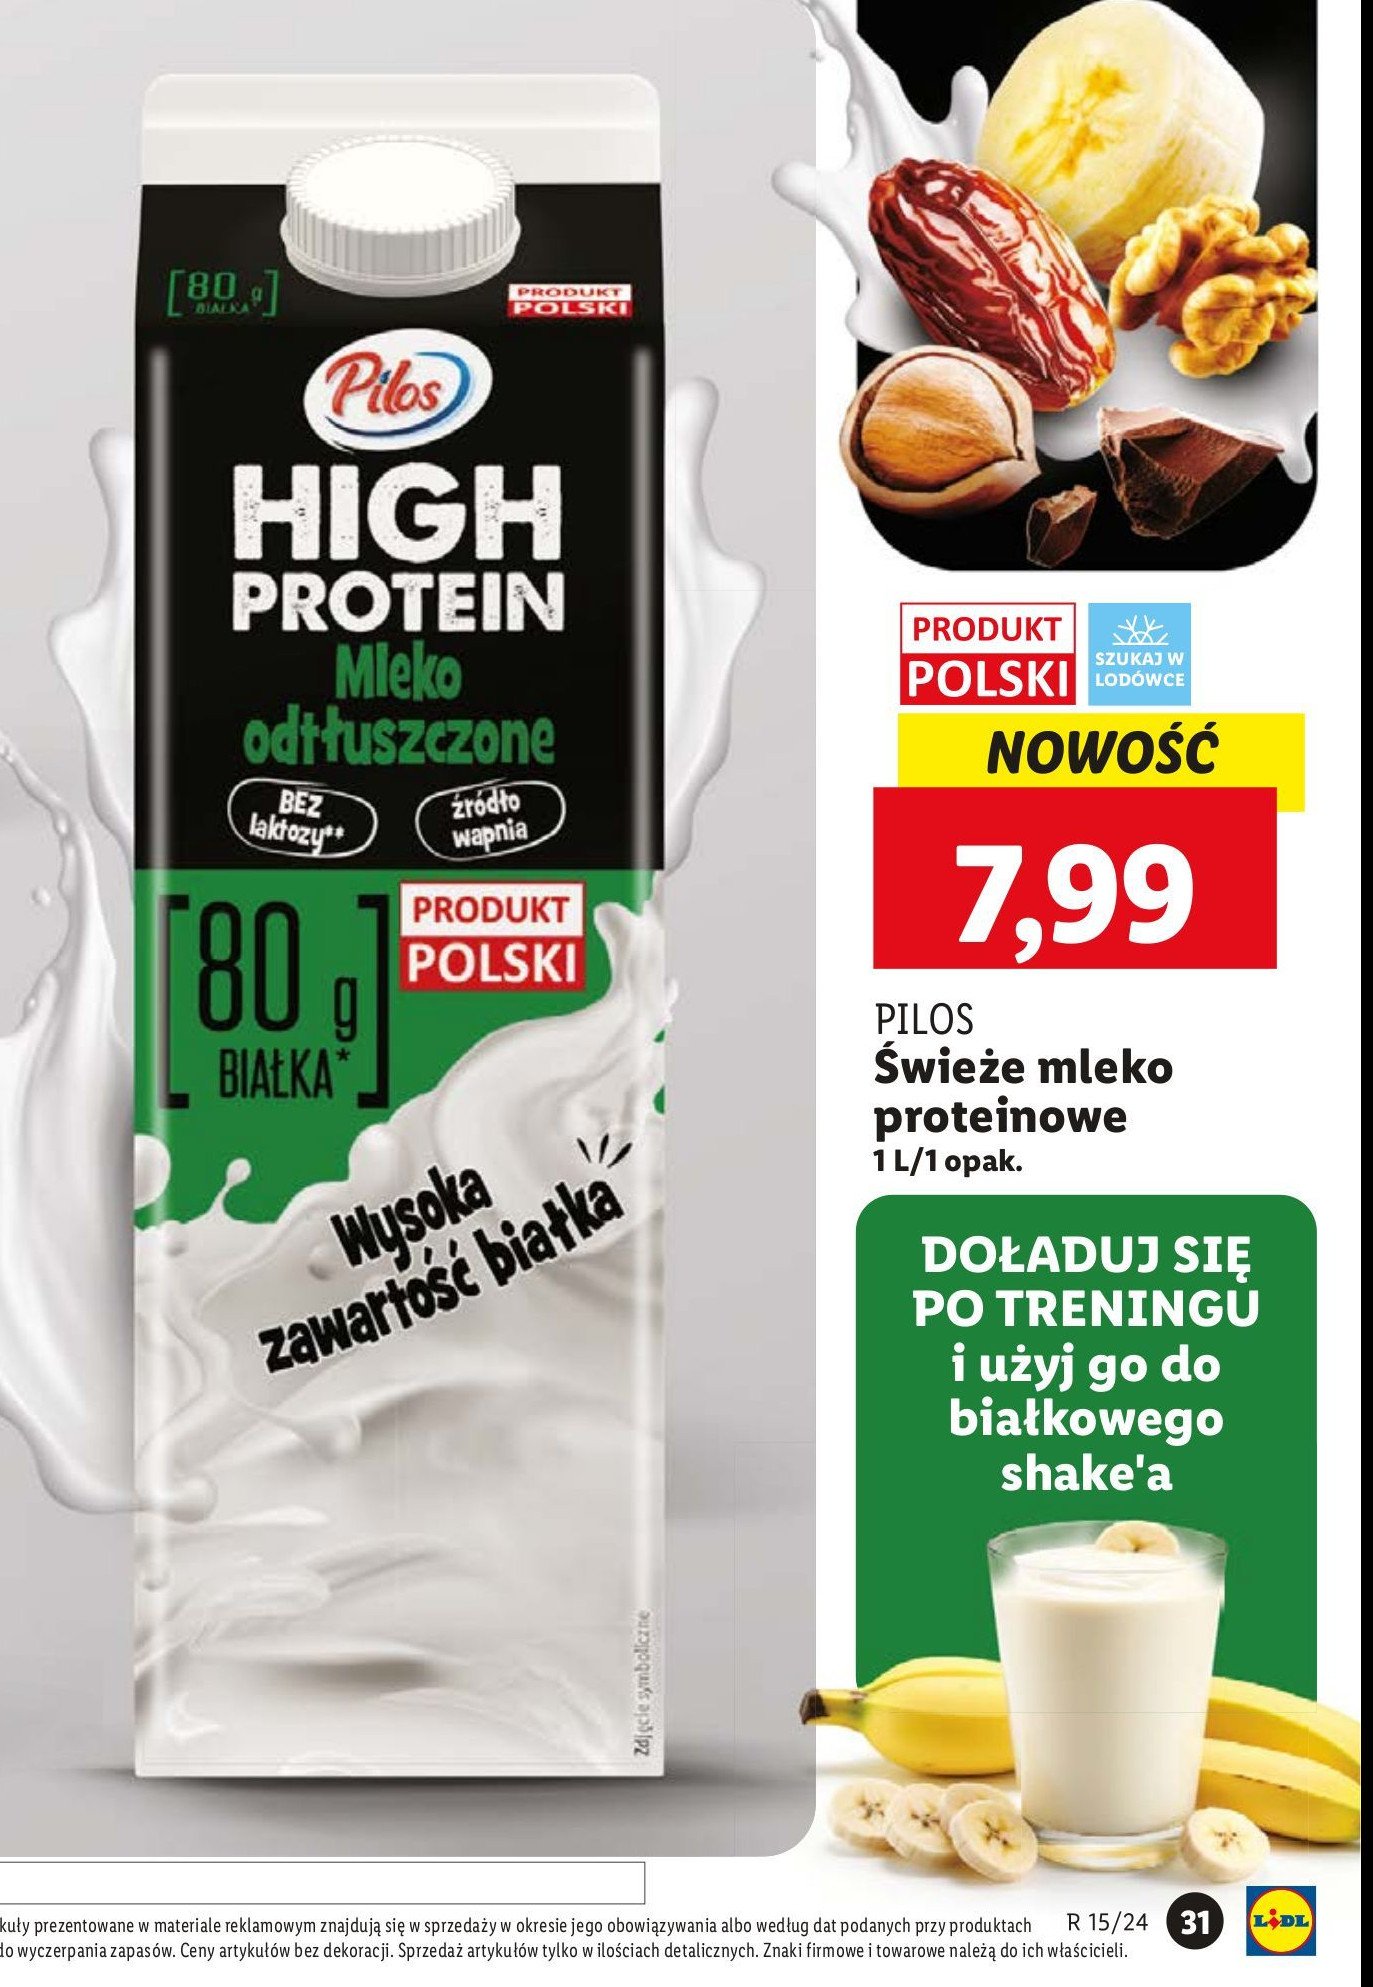 Mleko odtłuszczone PILOS HIGH PROTEIN promocja